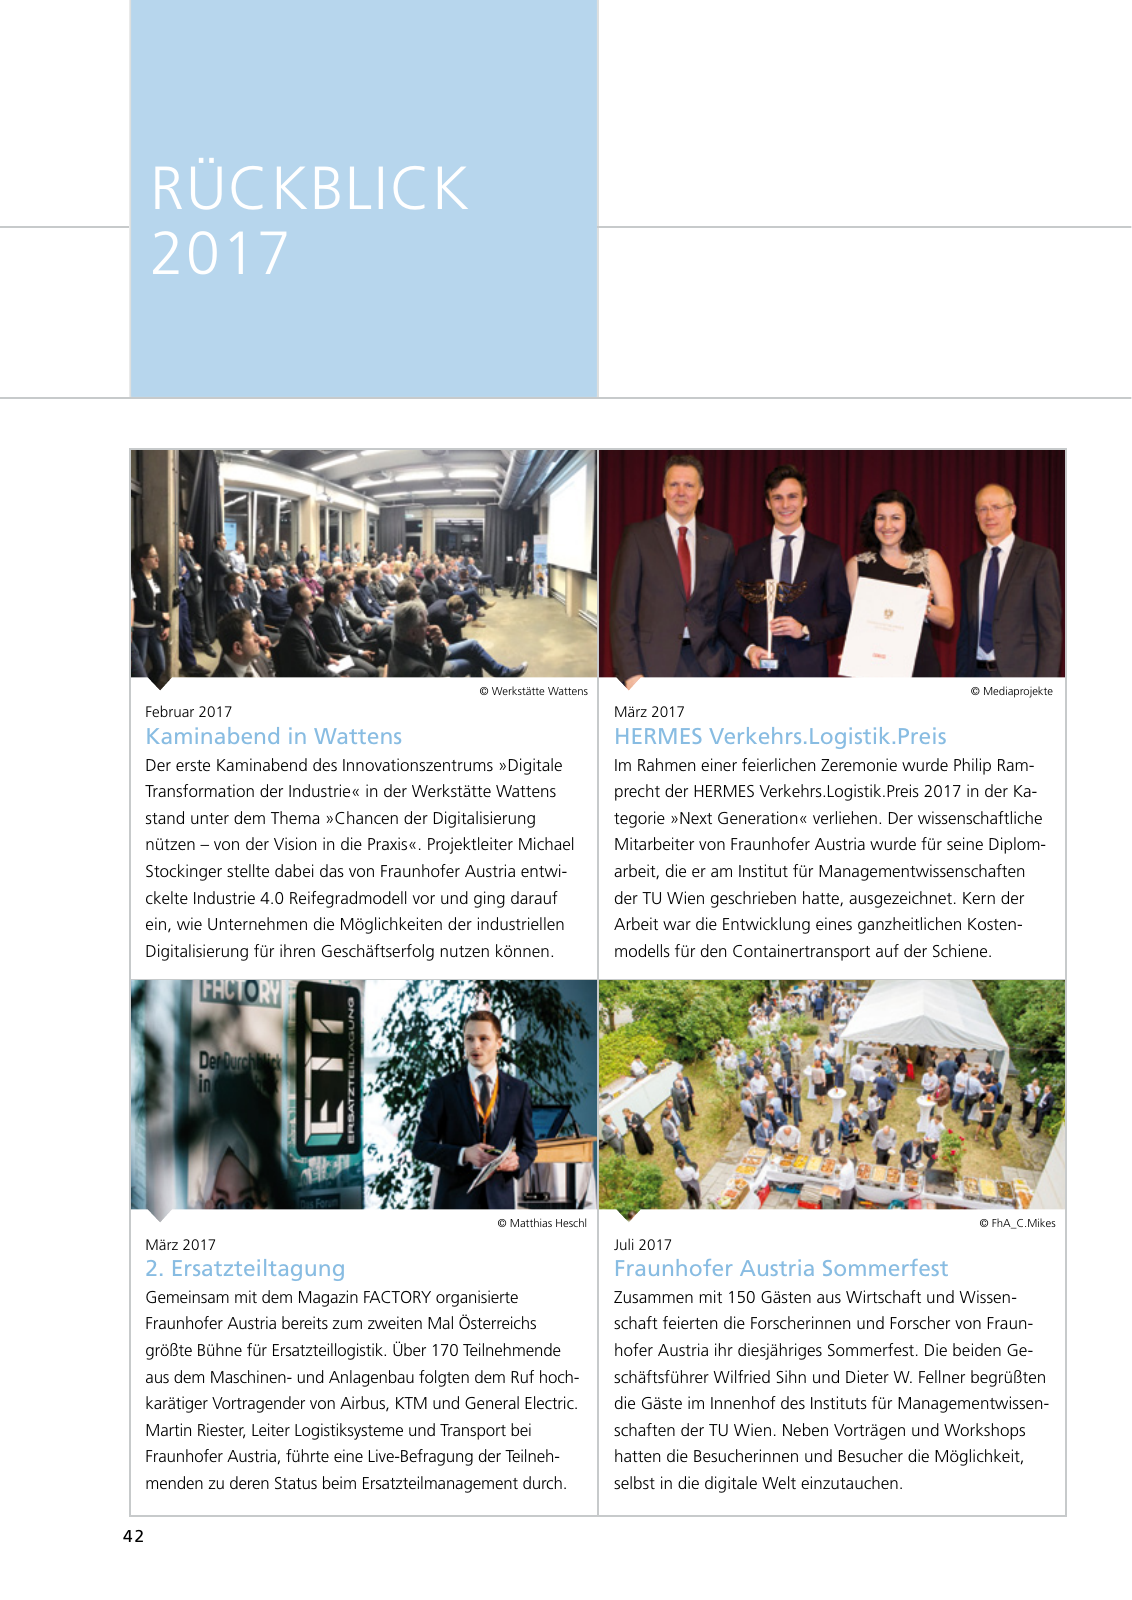 Vorschau Jahresbericht 2017 - Fraunhofer Austria Geschäftsbereich Produktions- und Logistikmanagment Seite 42